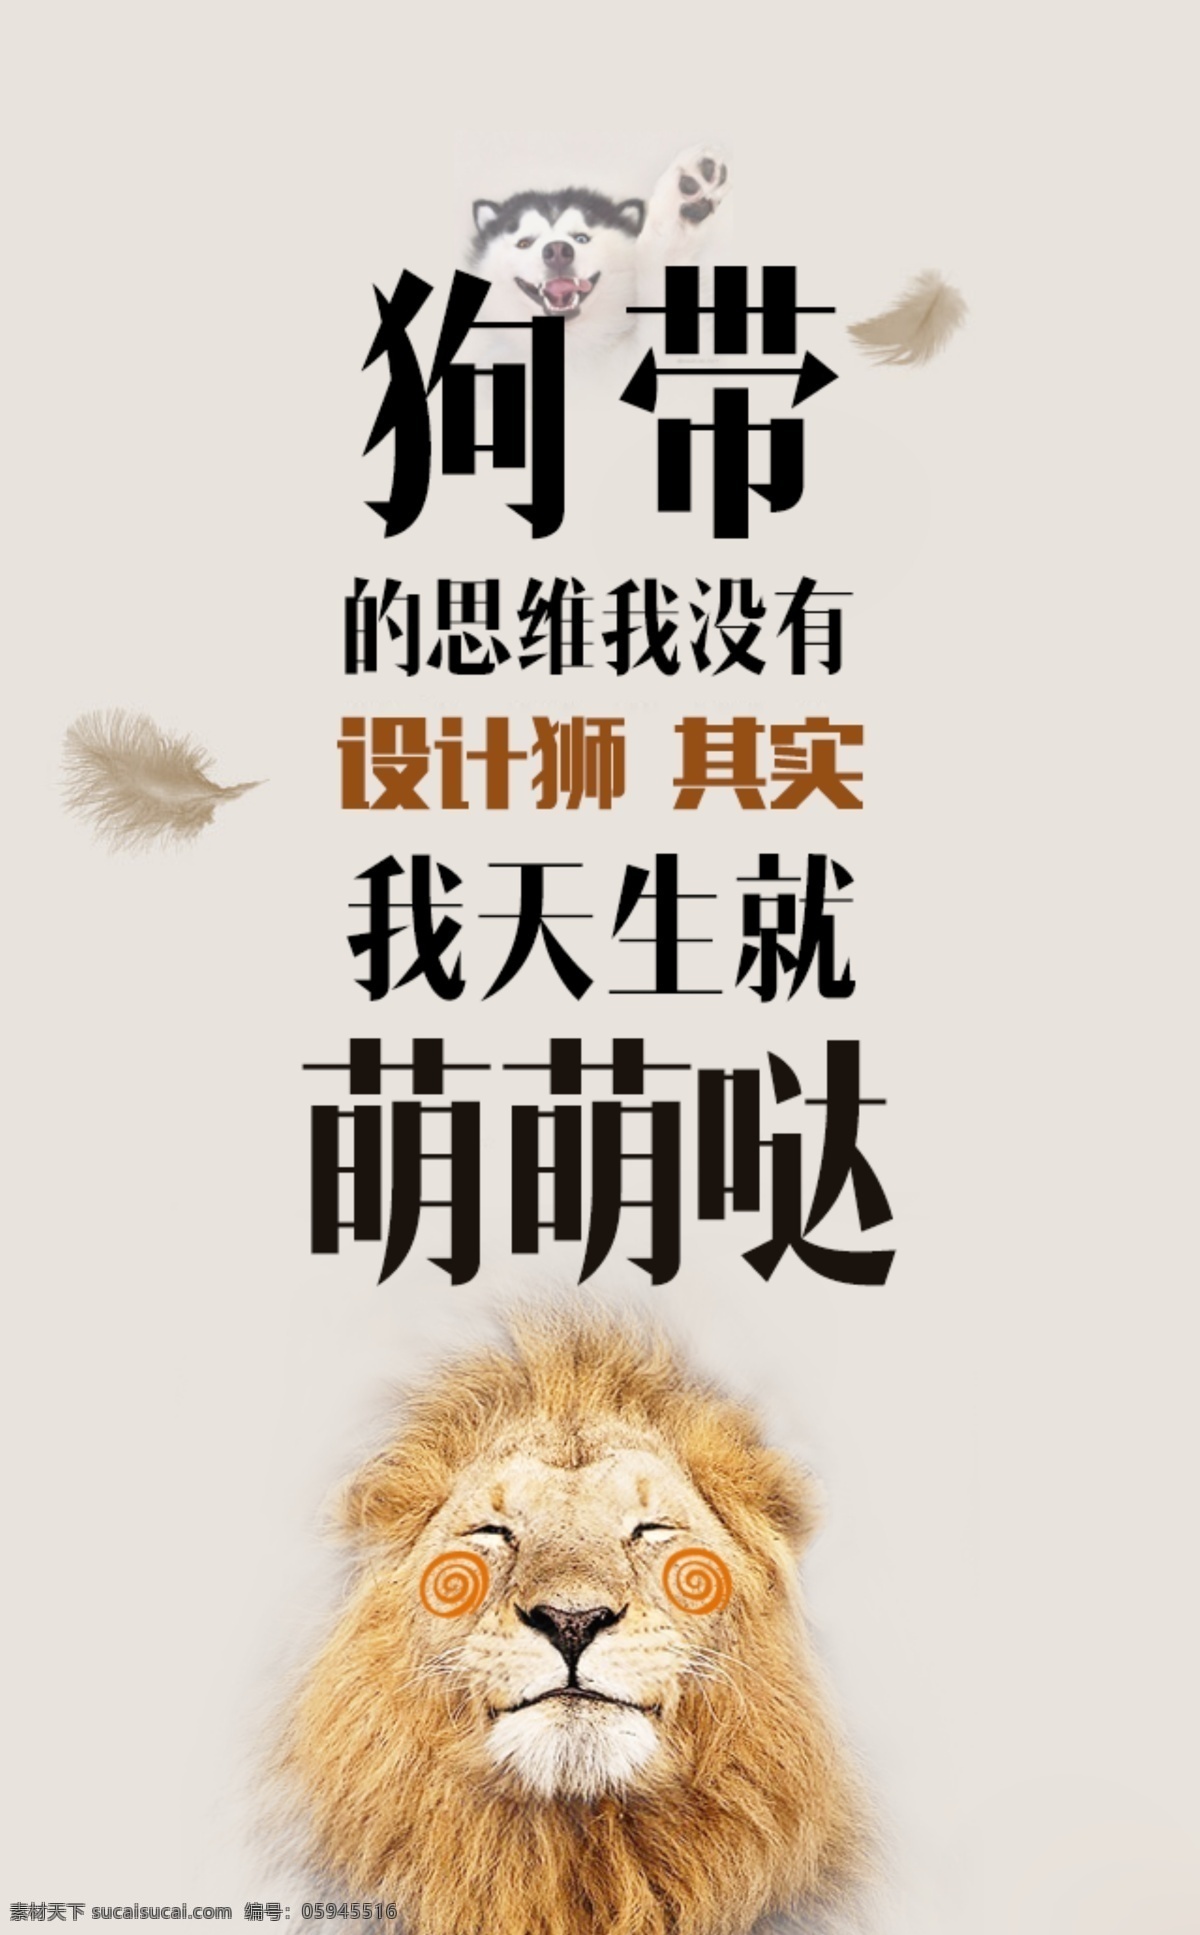 萌萌哒海报 设计师 设计狮 创意 狗带 萌萌哒 狮子 思维 平面 海报 粉色